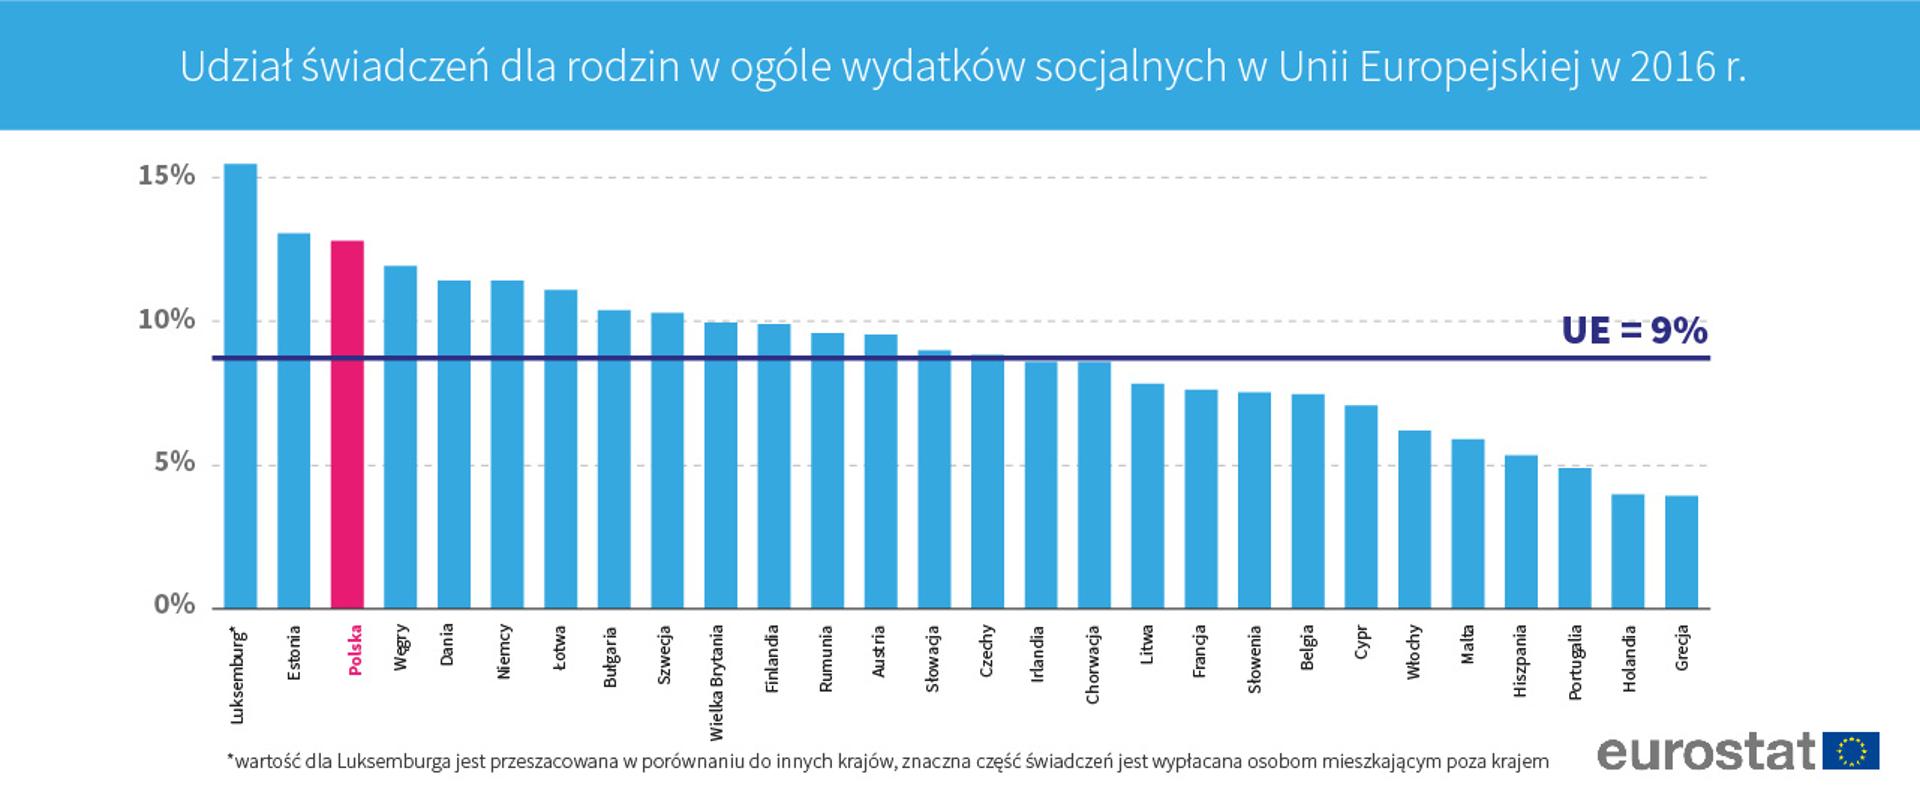 Polska na 3. miejscu w udziale świadczeń dla rodzin w wydatkach socjalnych